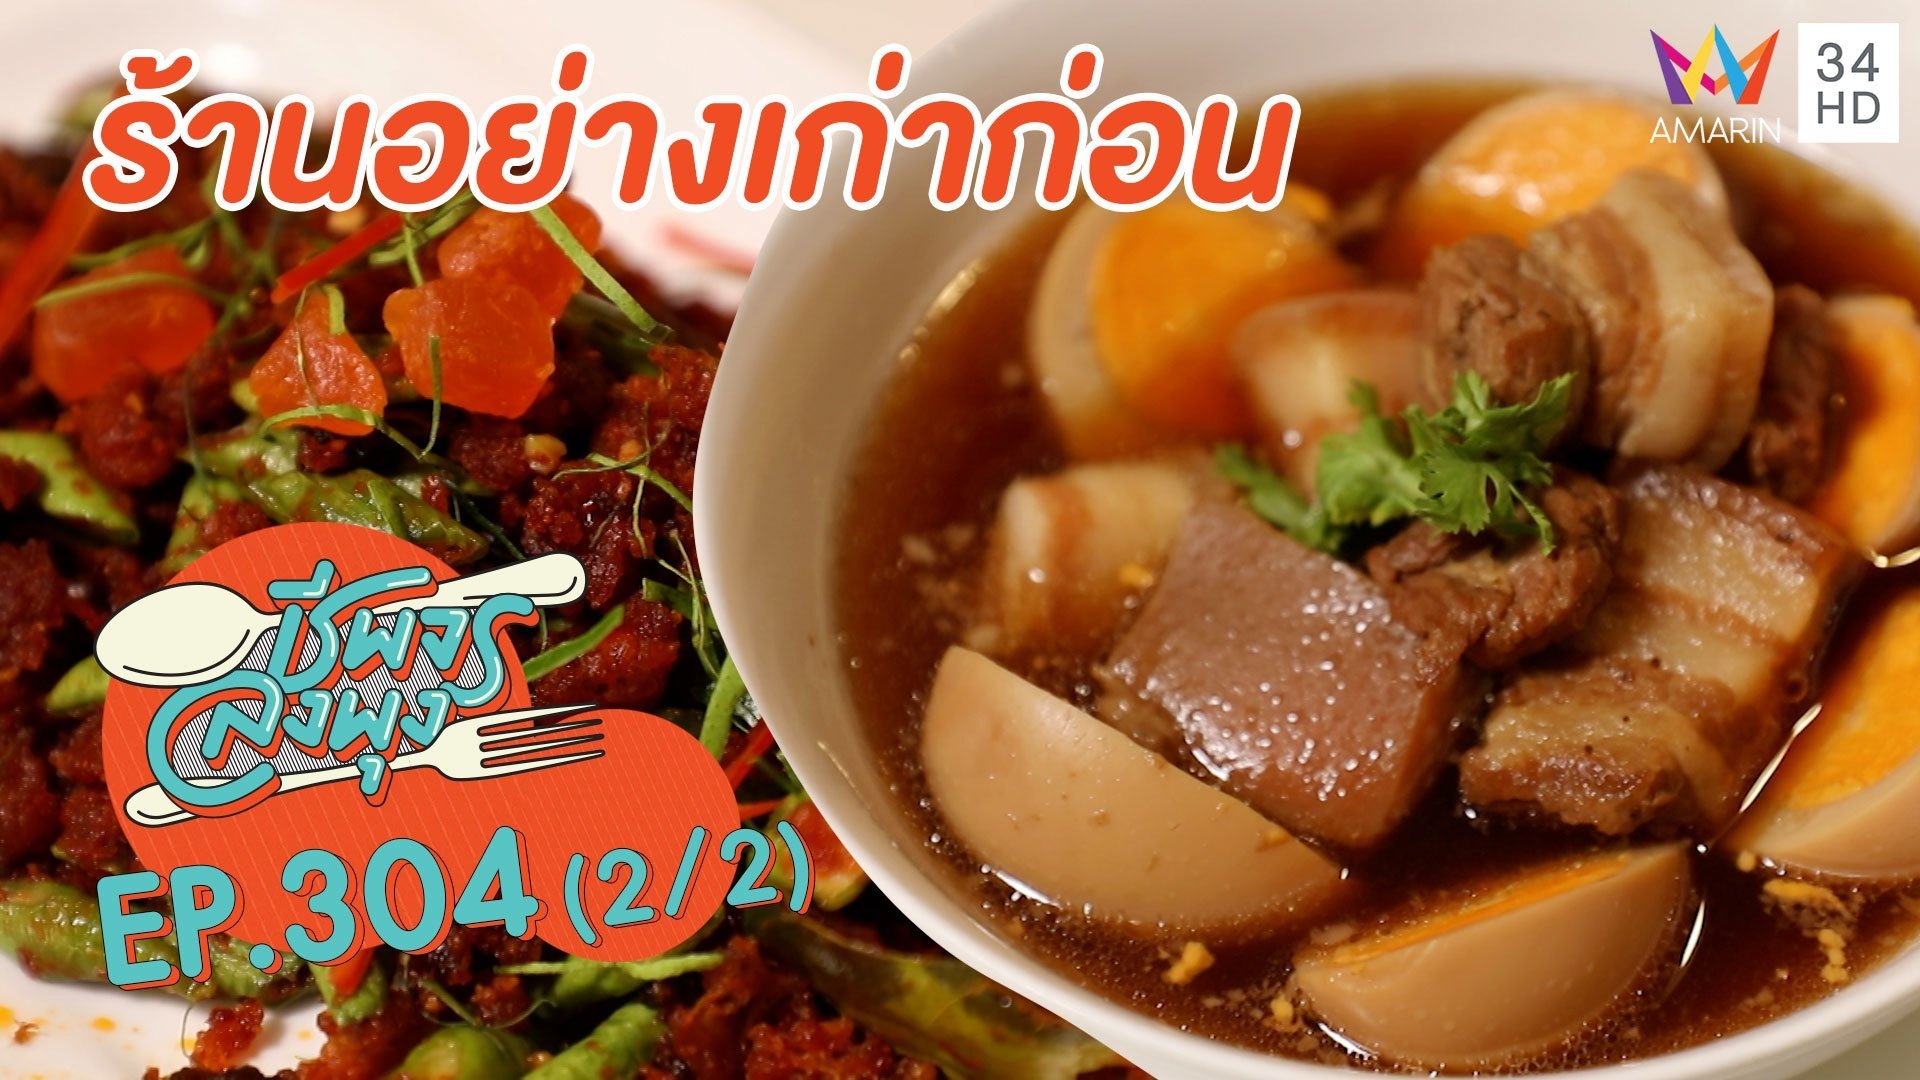 ชี้เป้าอาหารไทยรสกลมกล่อม @ร้านอย่างเก่าก่อน | ชีพจรลงพุง | 19 มิ.ย. 64 (2/2) | AMARIN TVHD34